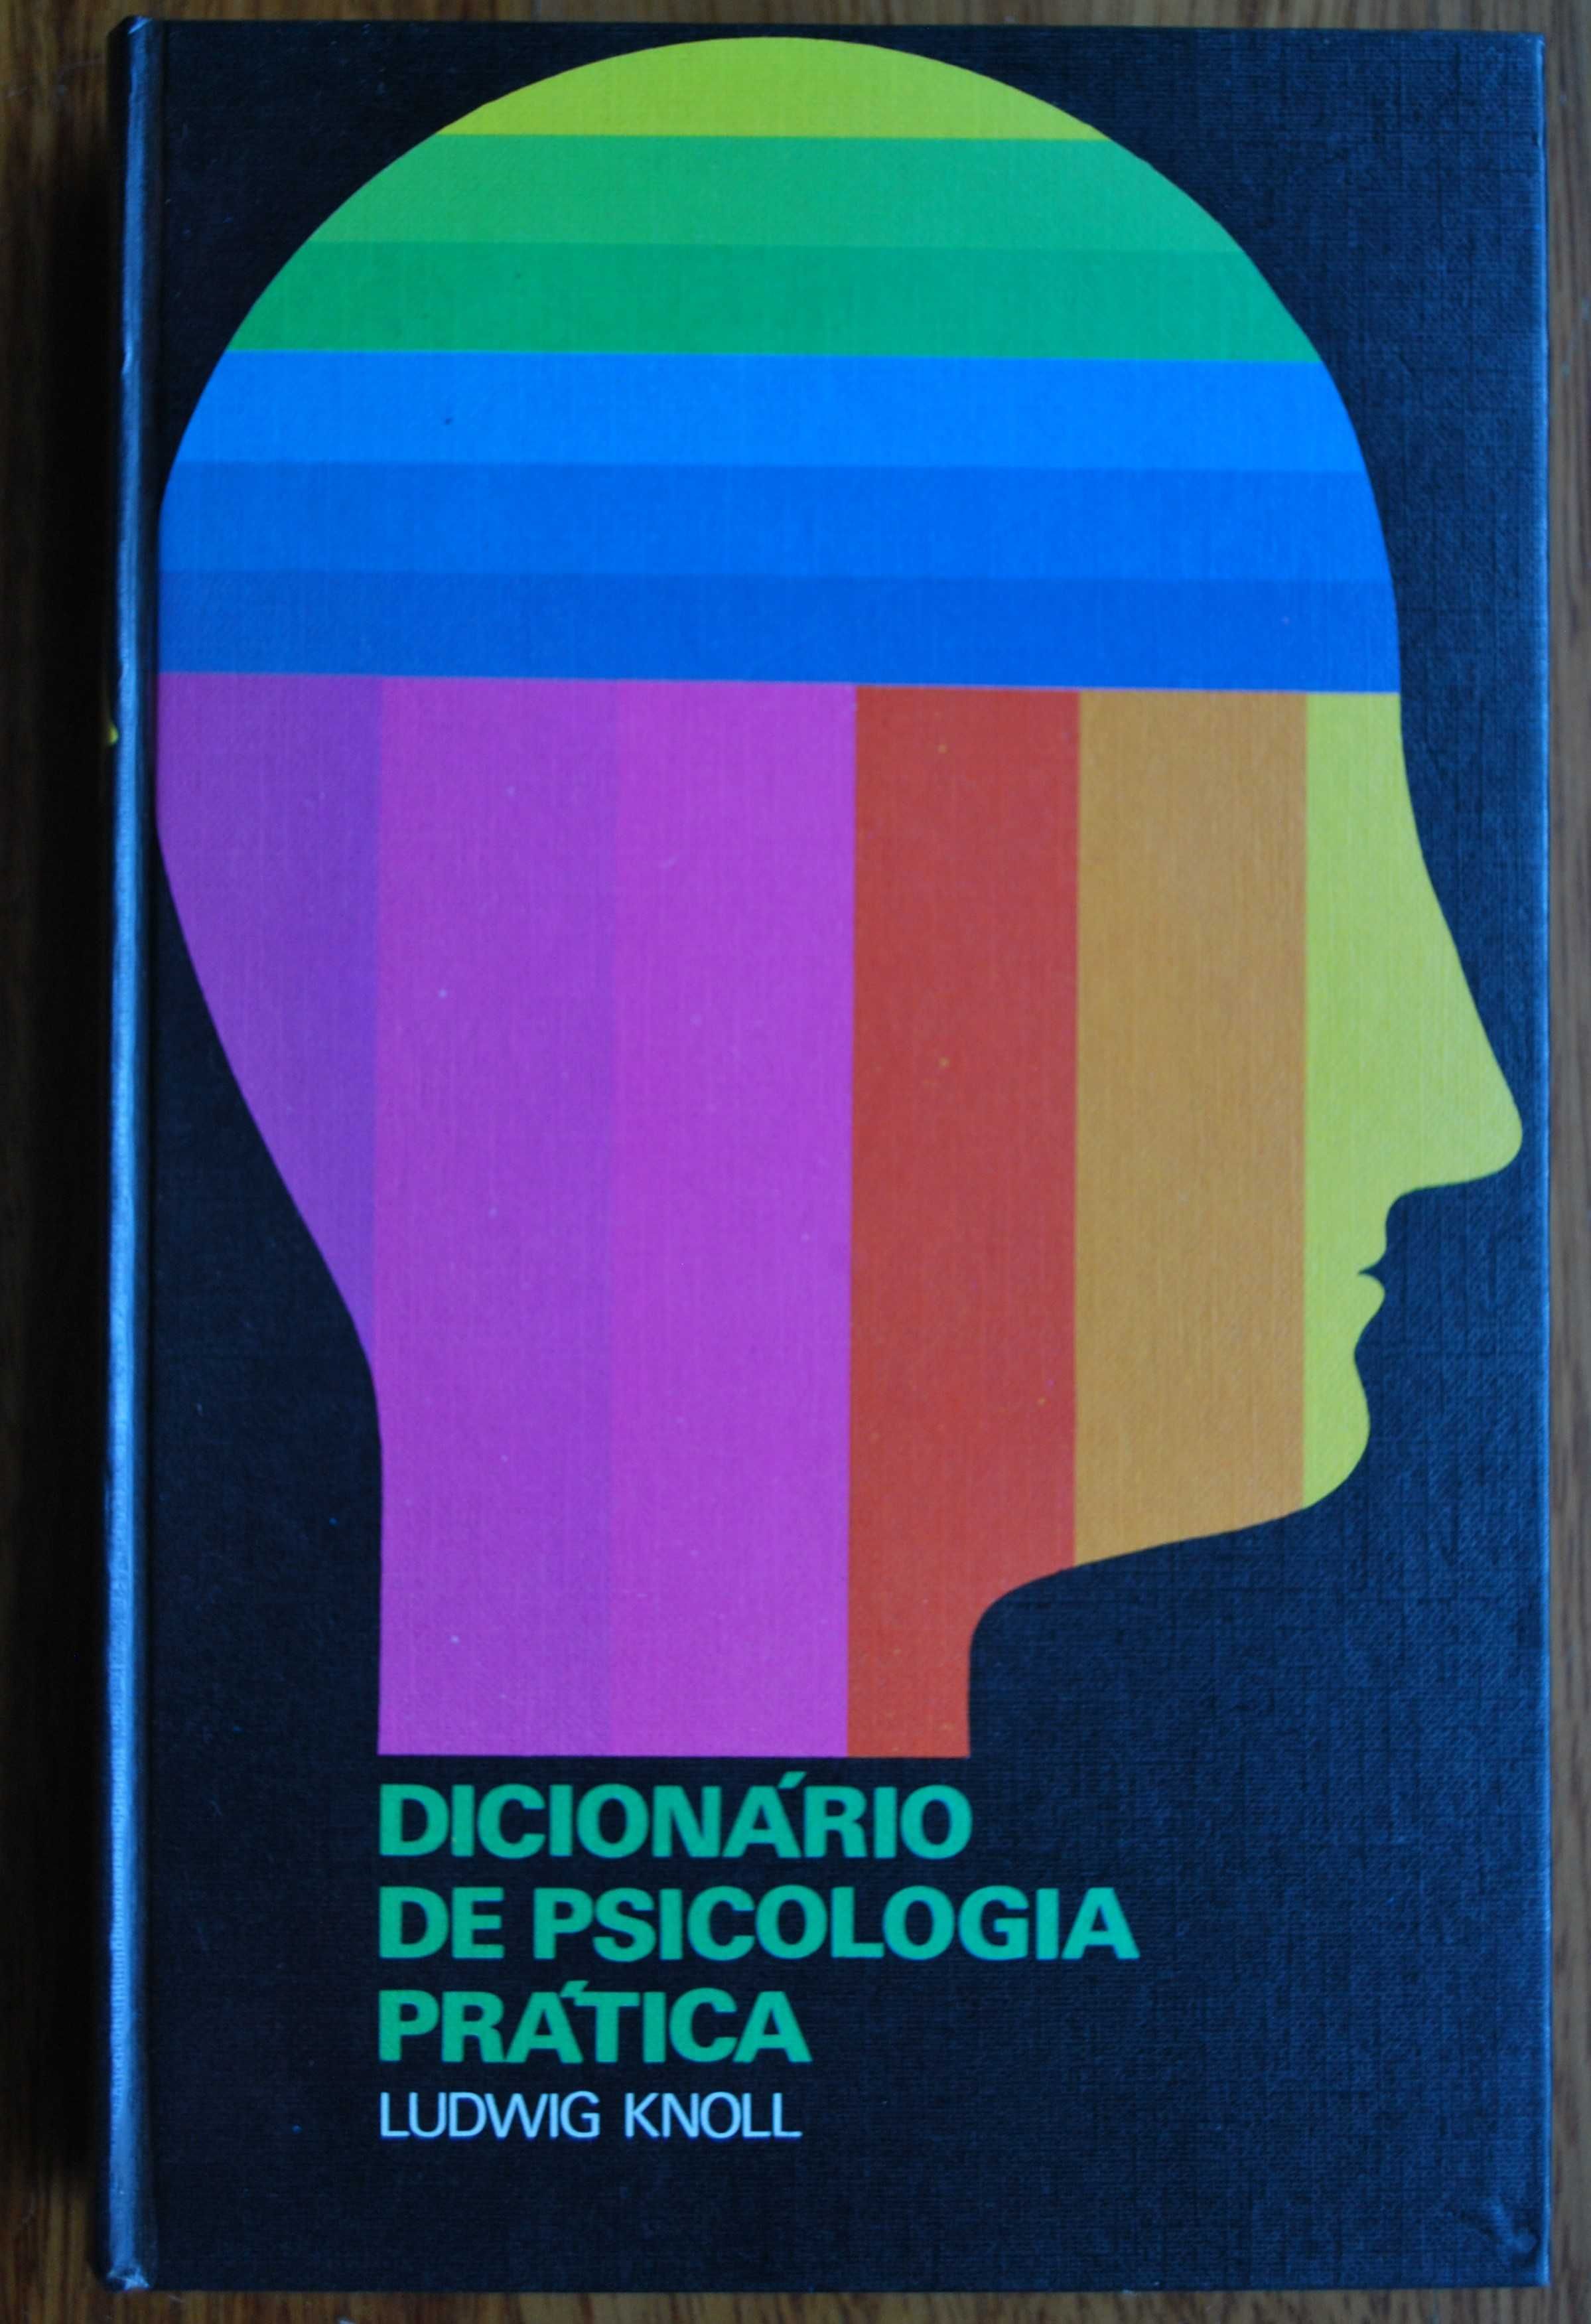 Dicionário de Psicologia Prática de Ludwig Knoll